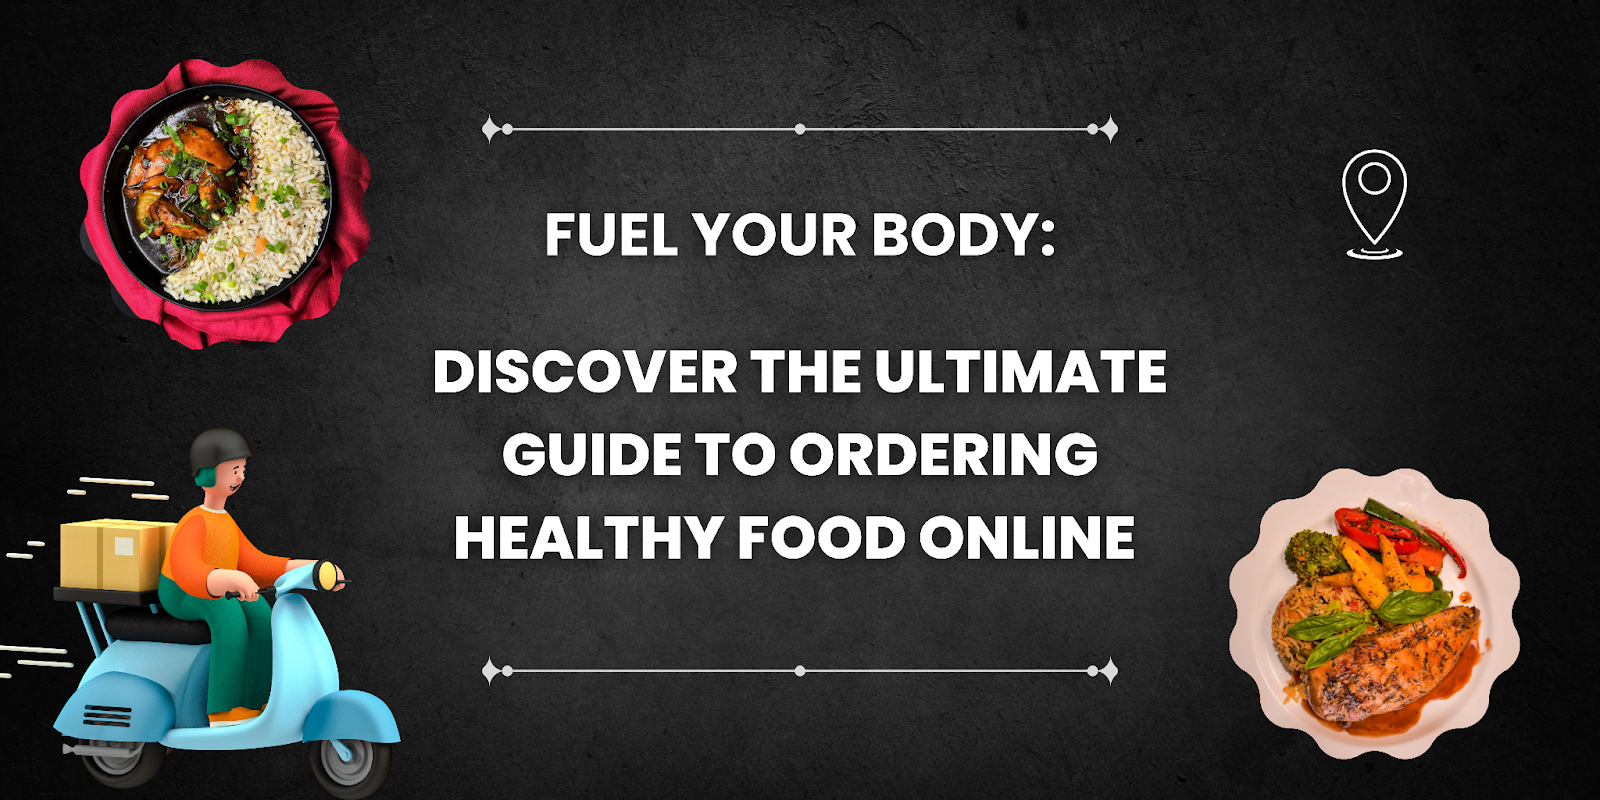 Ordering Healthy Food Online 
